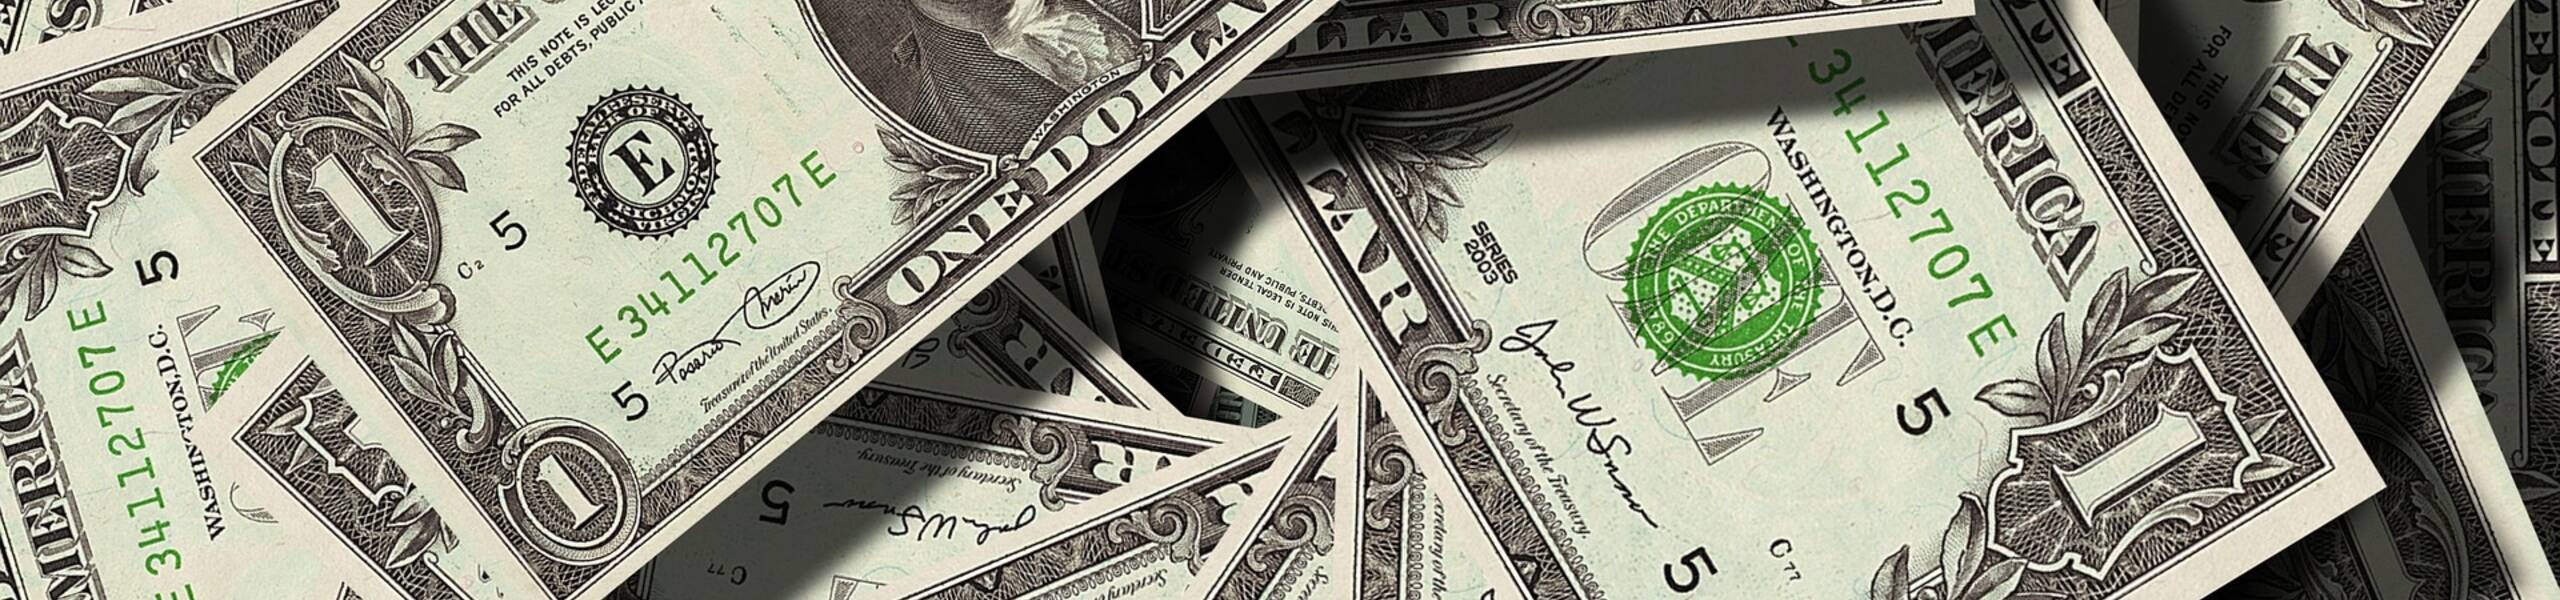 El dólar pierde terreno frente a la mayoría de sus pares ante el cierre de conversaciones  de Estados Unidos y China